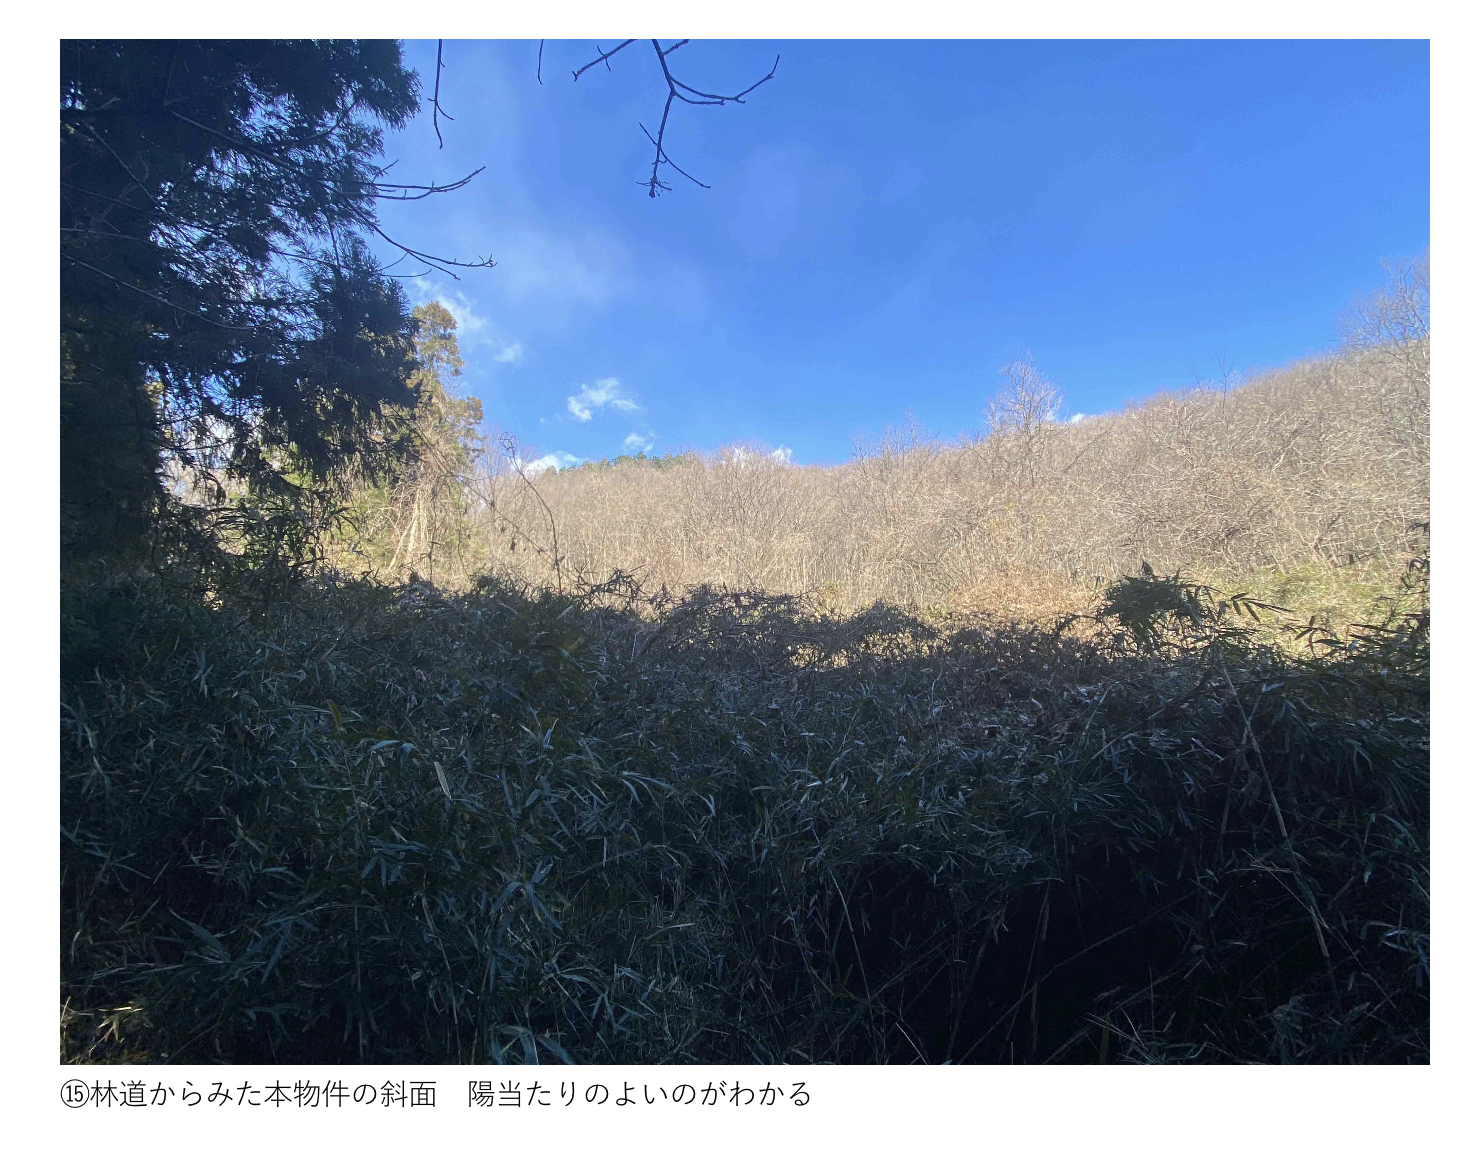   値下げしました。群馬県桐生市内にある陽当たりの良いキャンプ向きの山林です。120万円